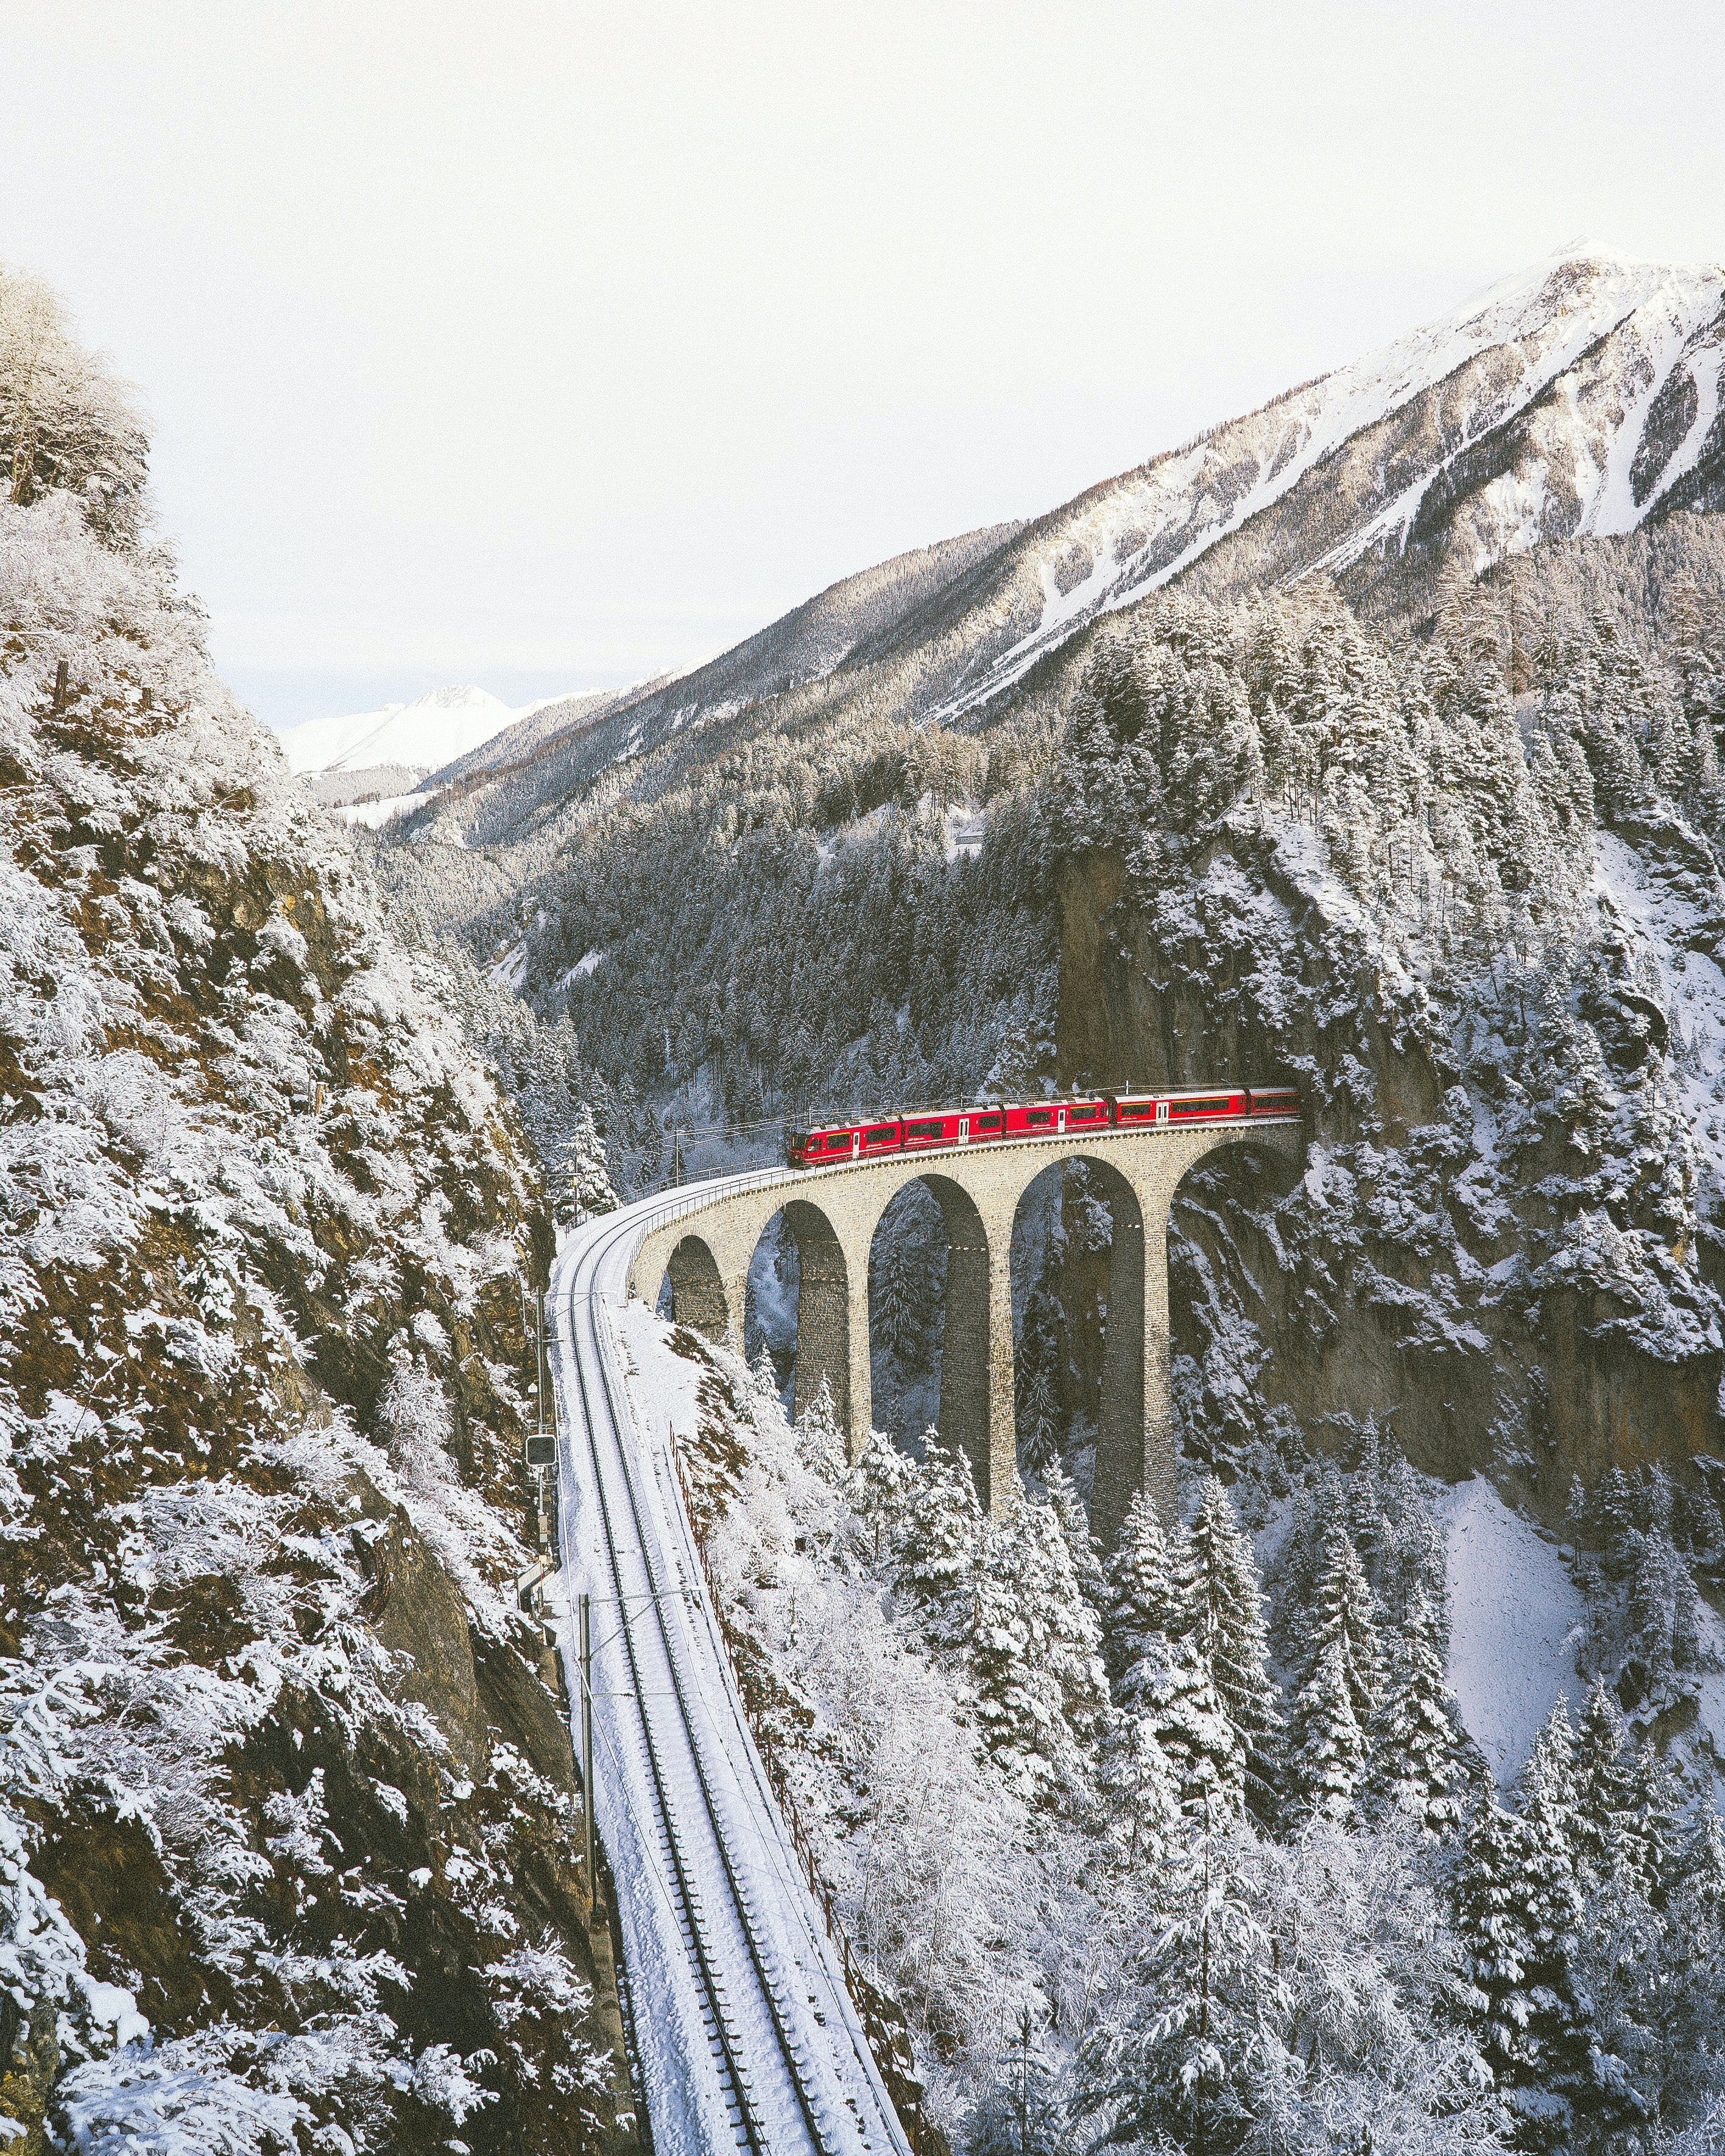 Paysage suisse sous la neige avec un train passant sur le viaduque au milieu des montagnes. Photo par Johannes Hofmann